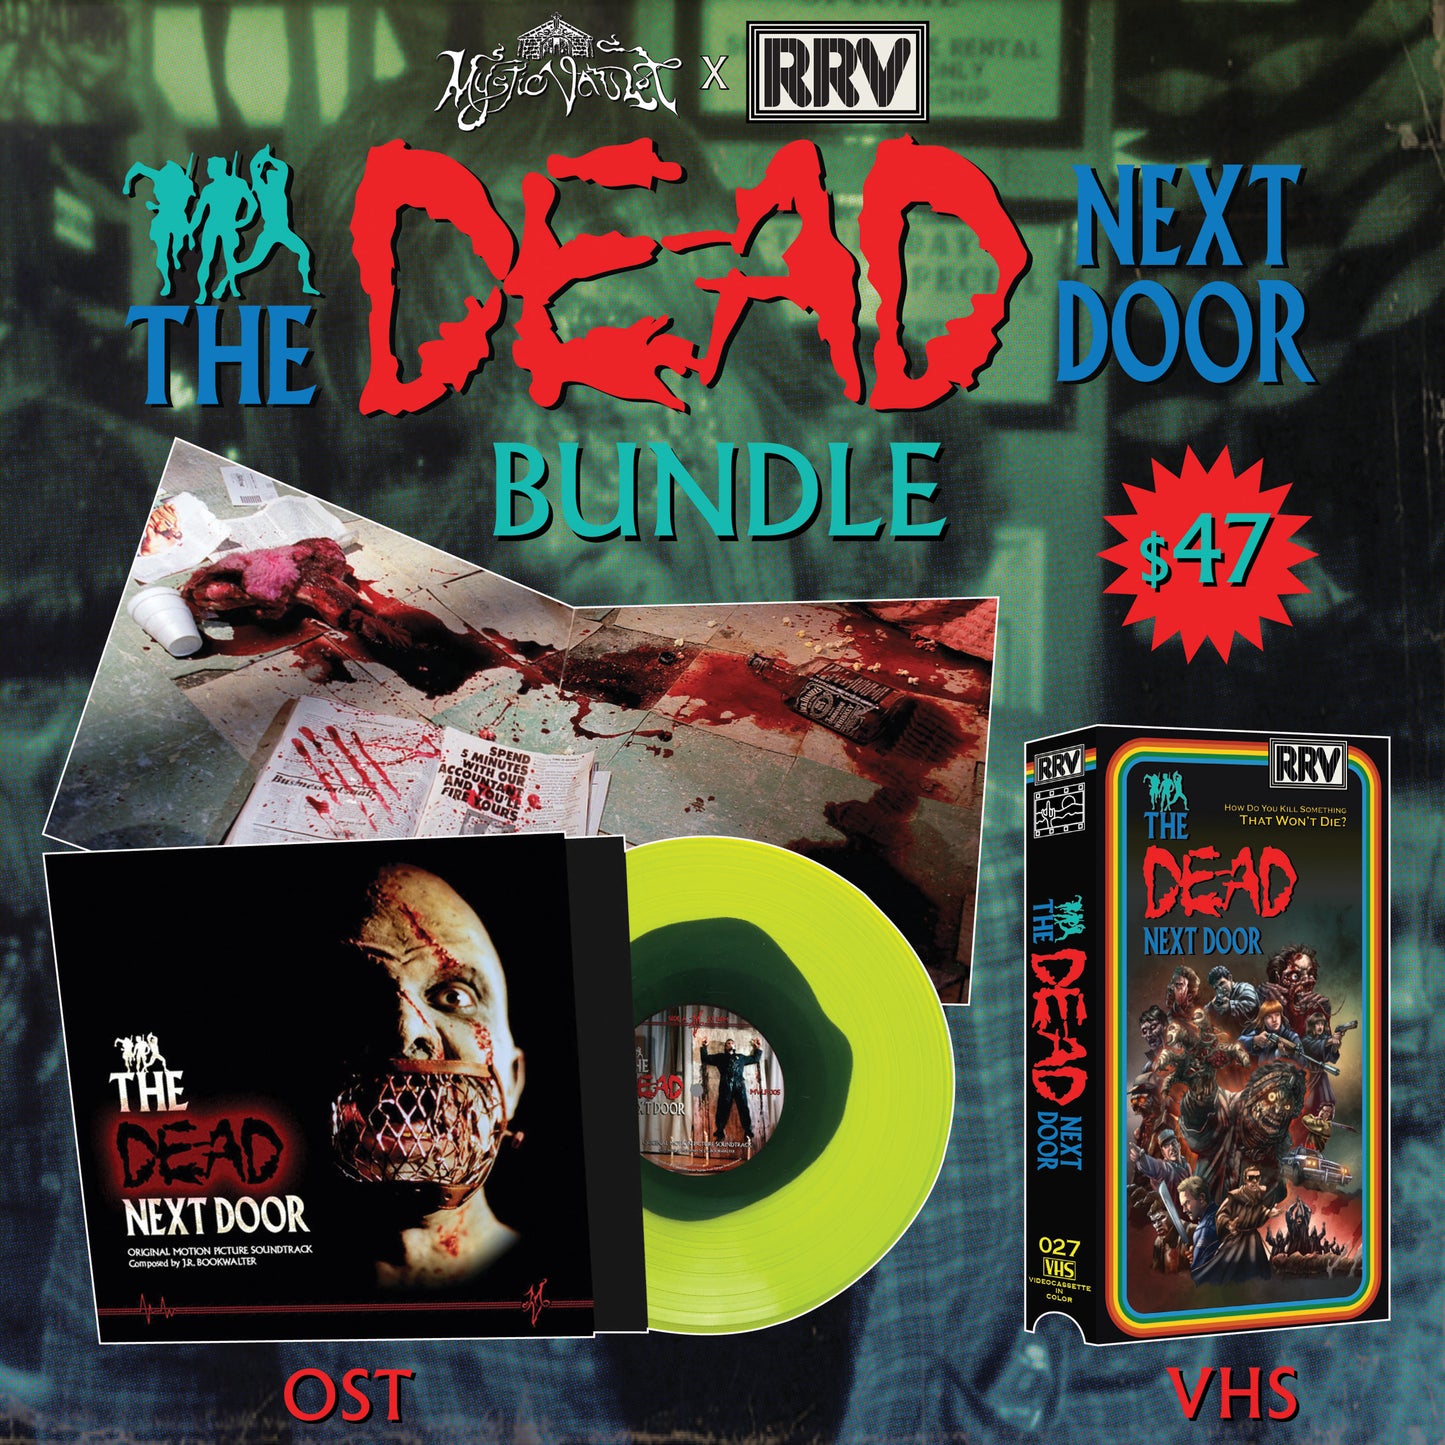 THE DEAD NEXT DOOR (1989) LP and VHS BUNDLE